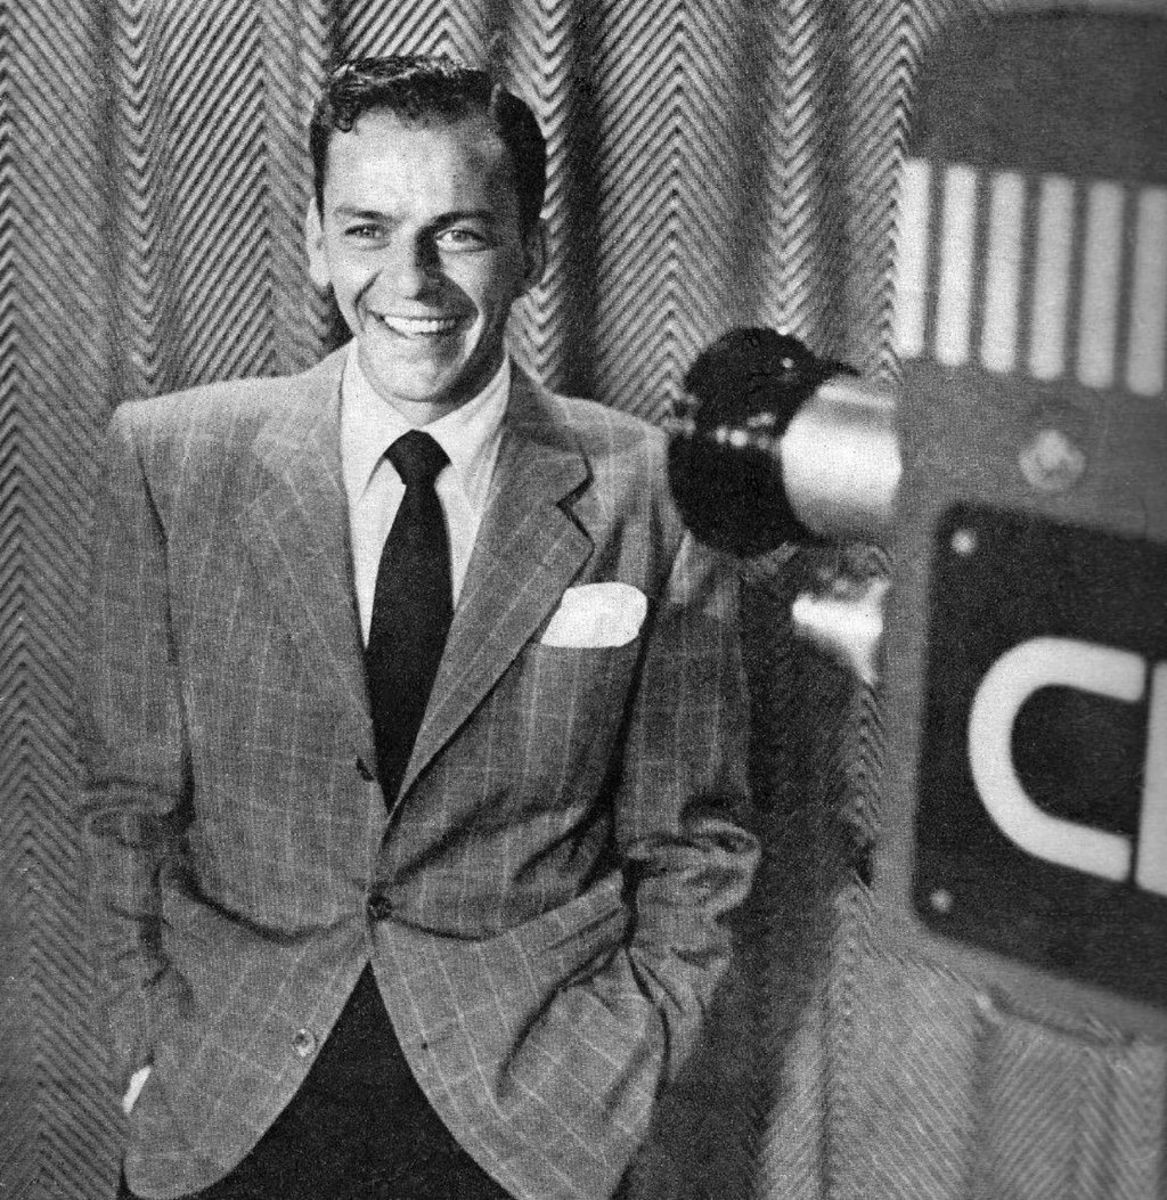 Sinatra in November 1950